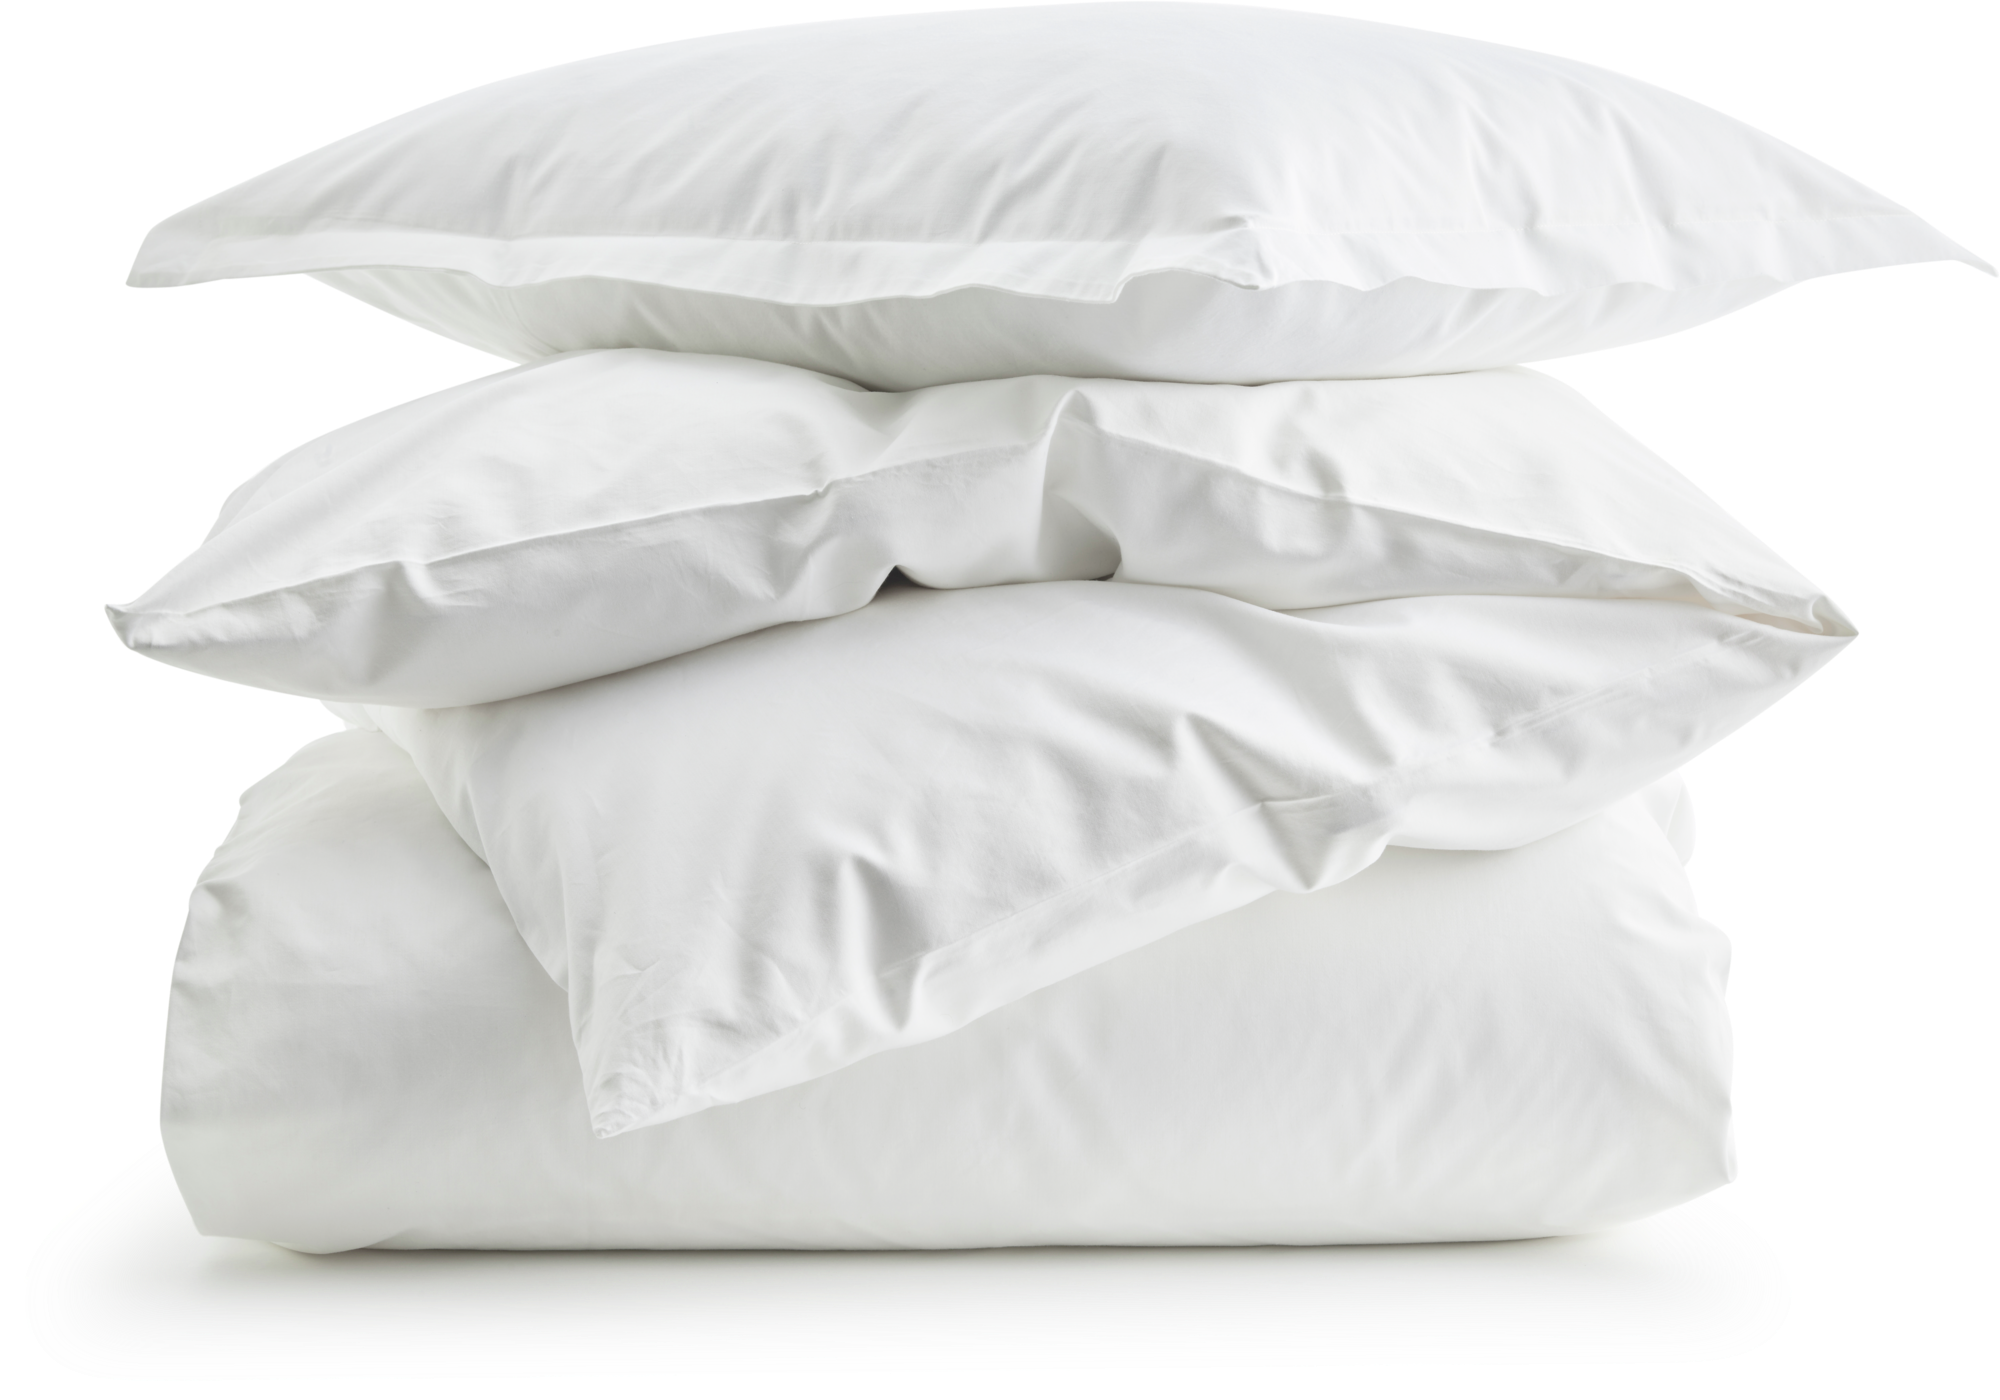 Air bed linen